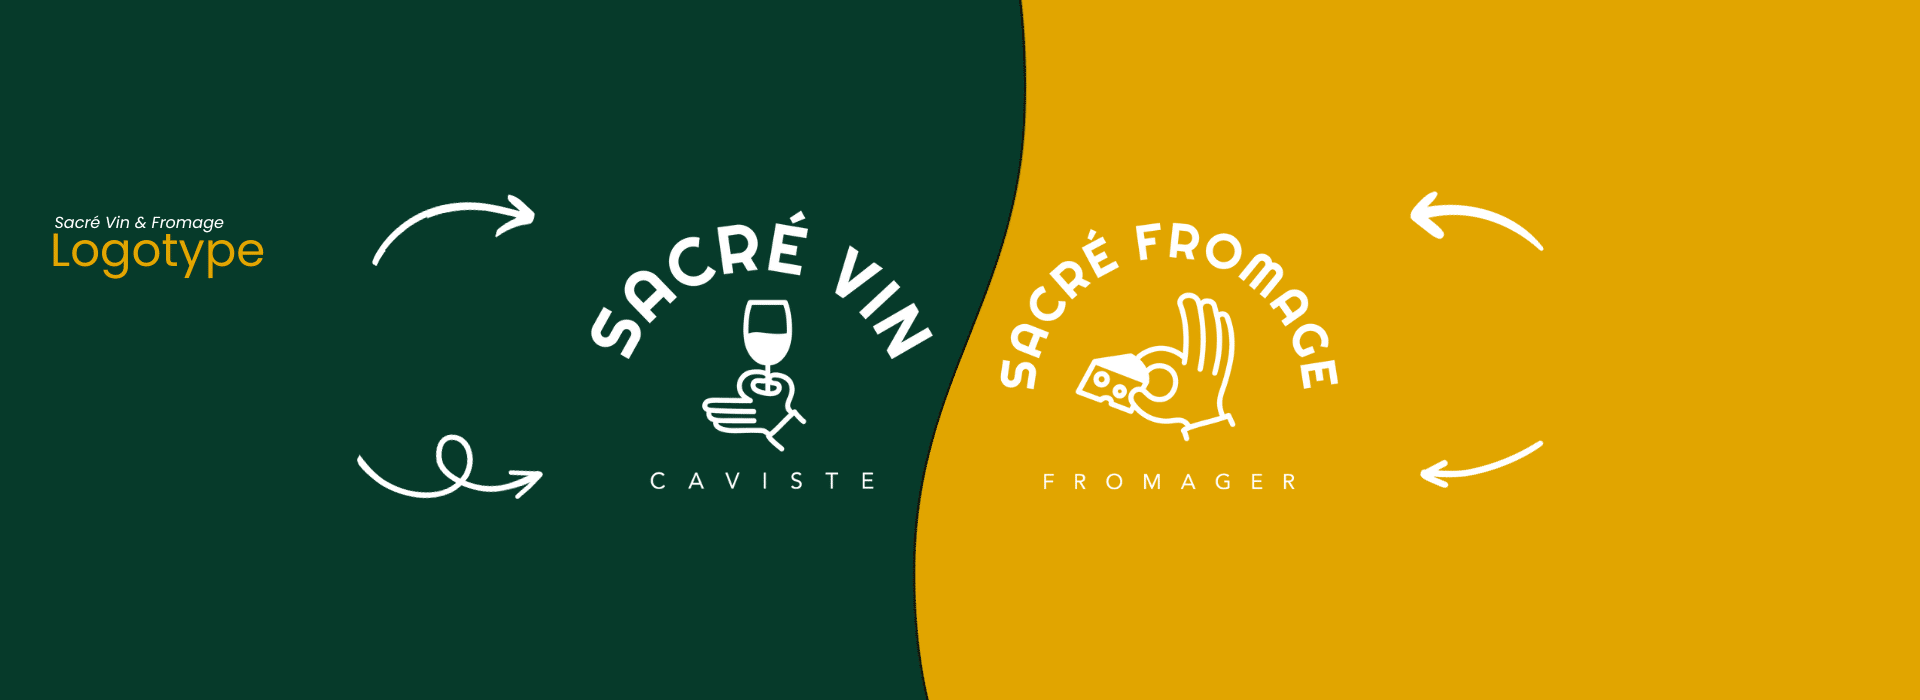 Création de site Galopins | Sacré Vin & Fromage